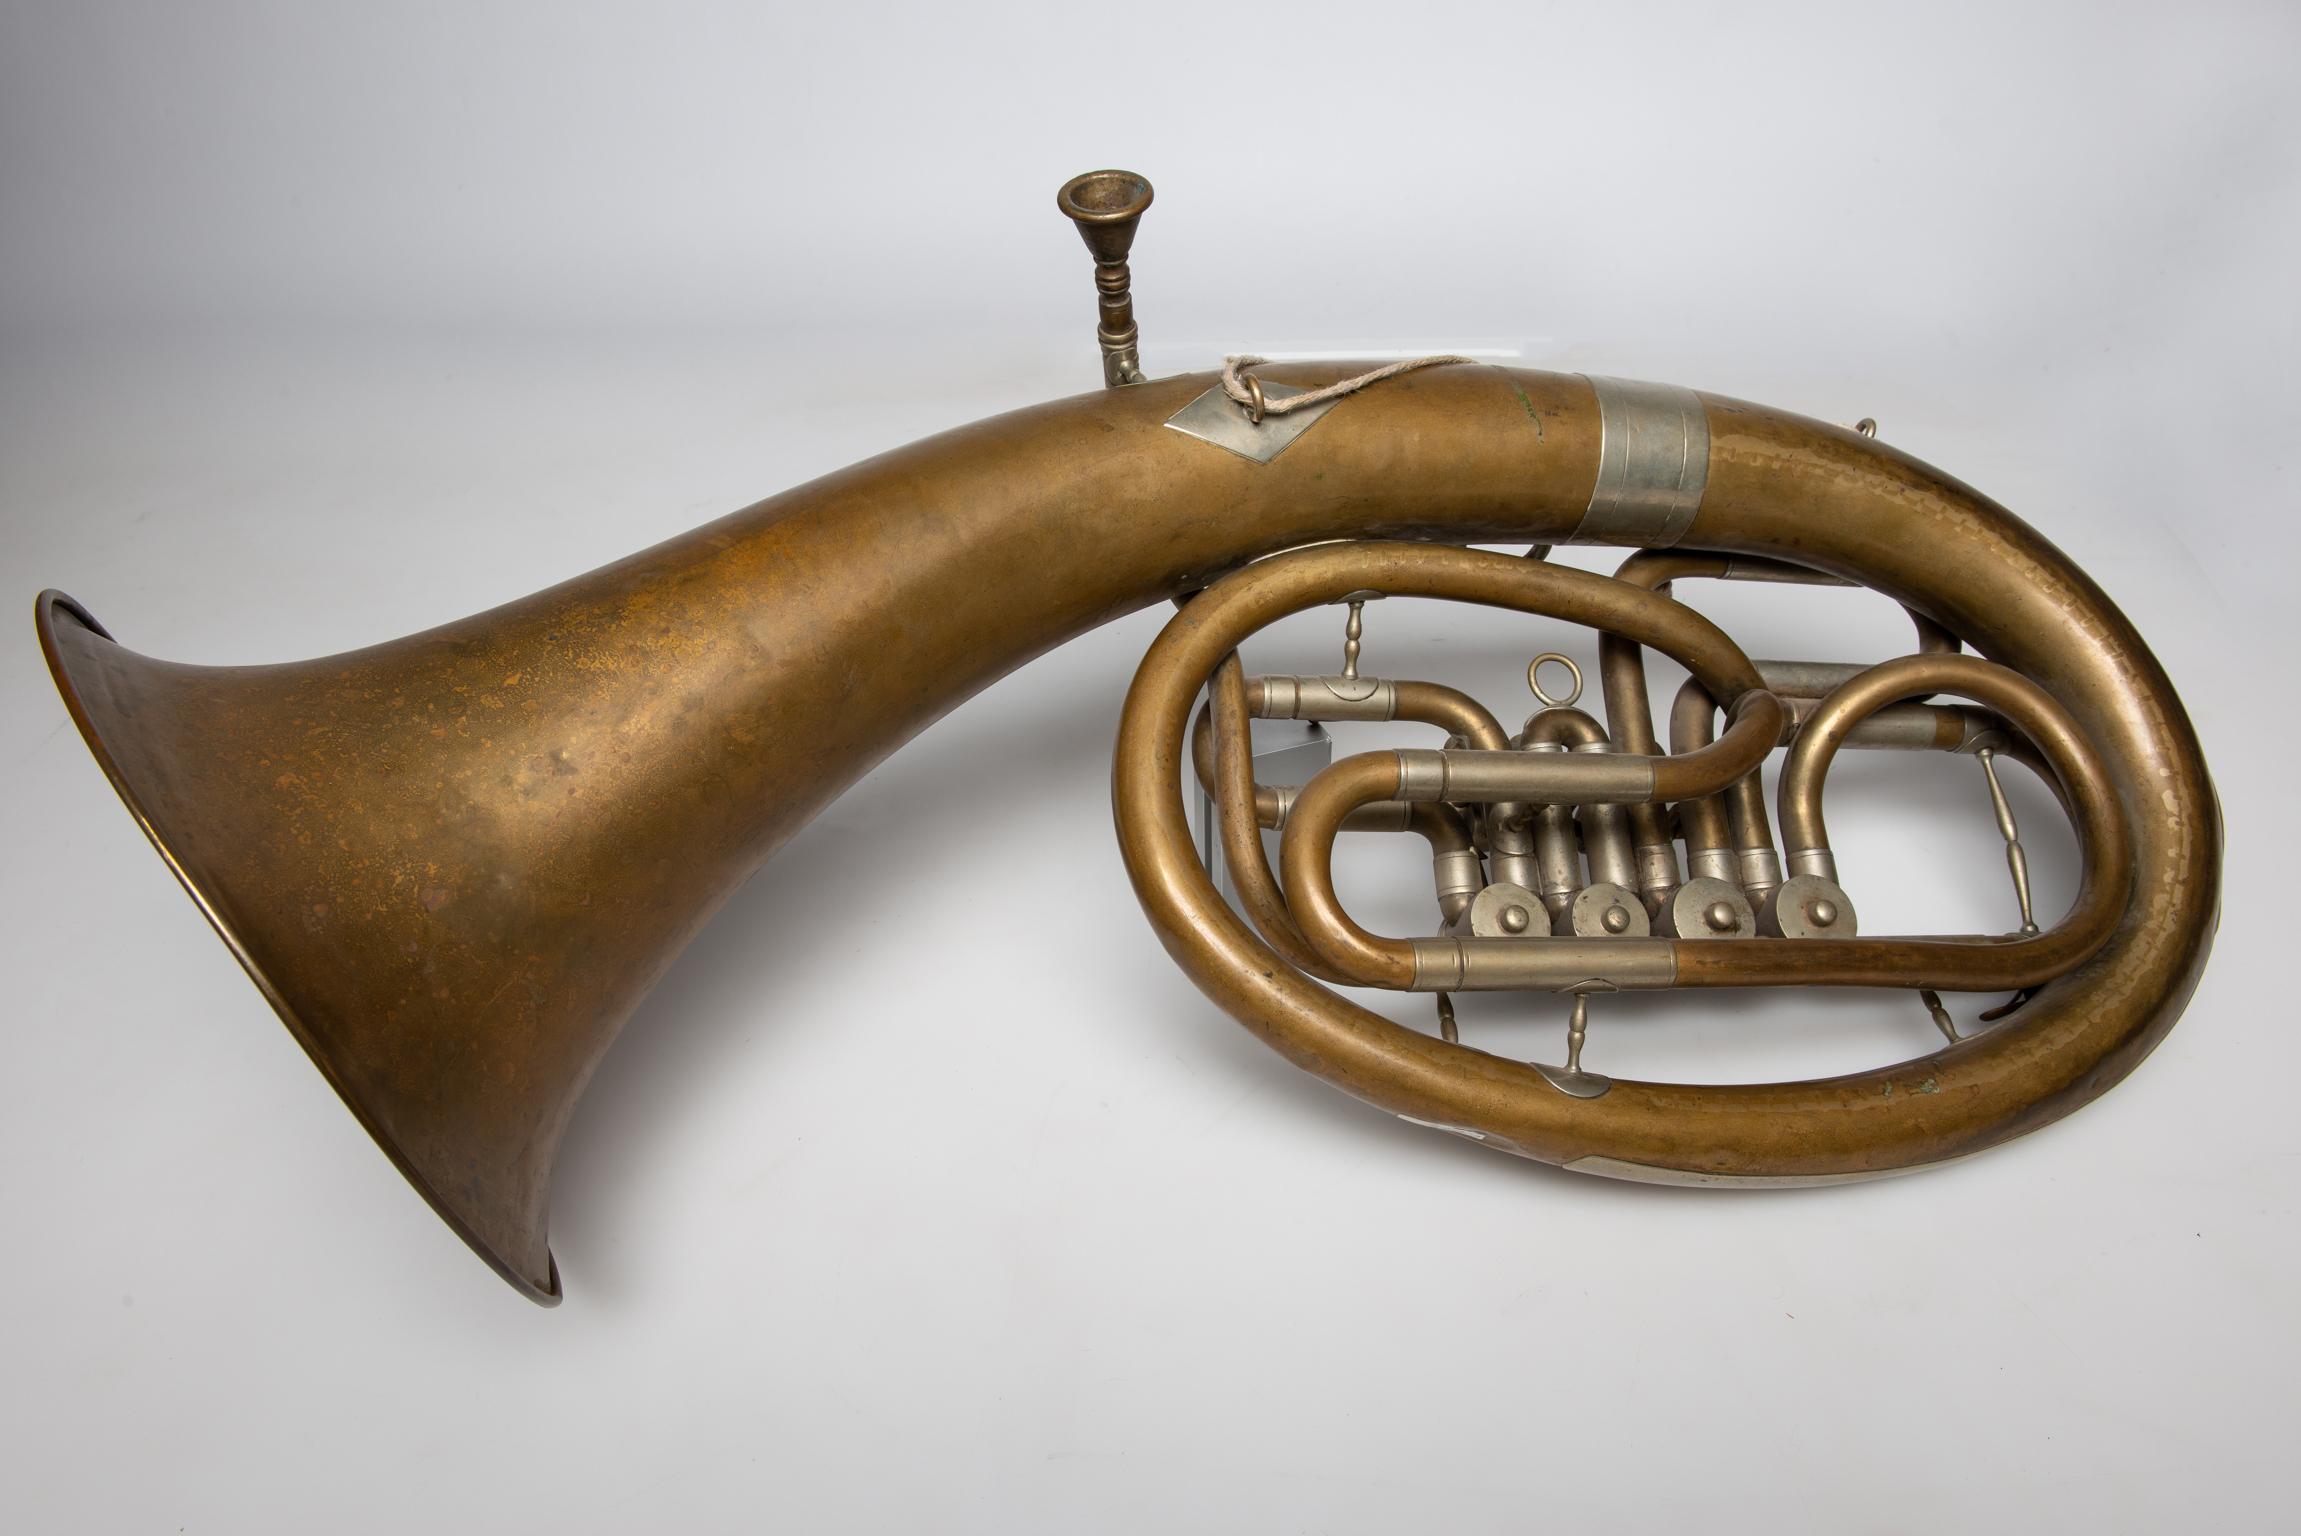 Tenor 4-Zylinder-Flügelhorn - Dieses Tenor-Flügelhorn wurde von V.F. hergestellt. Cerveny & S. - Hradec . Kralove - Das Unternehmen wurde 1842 in Hradeh Kralove, Tschechische Republik, gegründet. Es war Cerveny, der 1846 das System der Drehventile